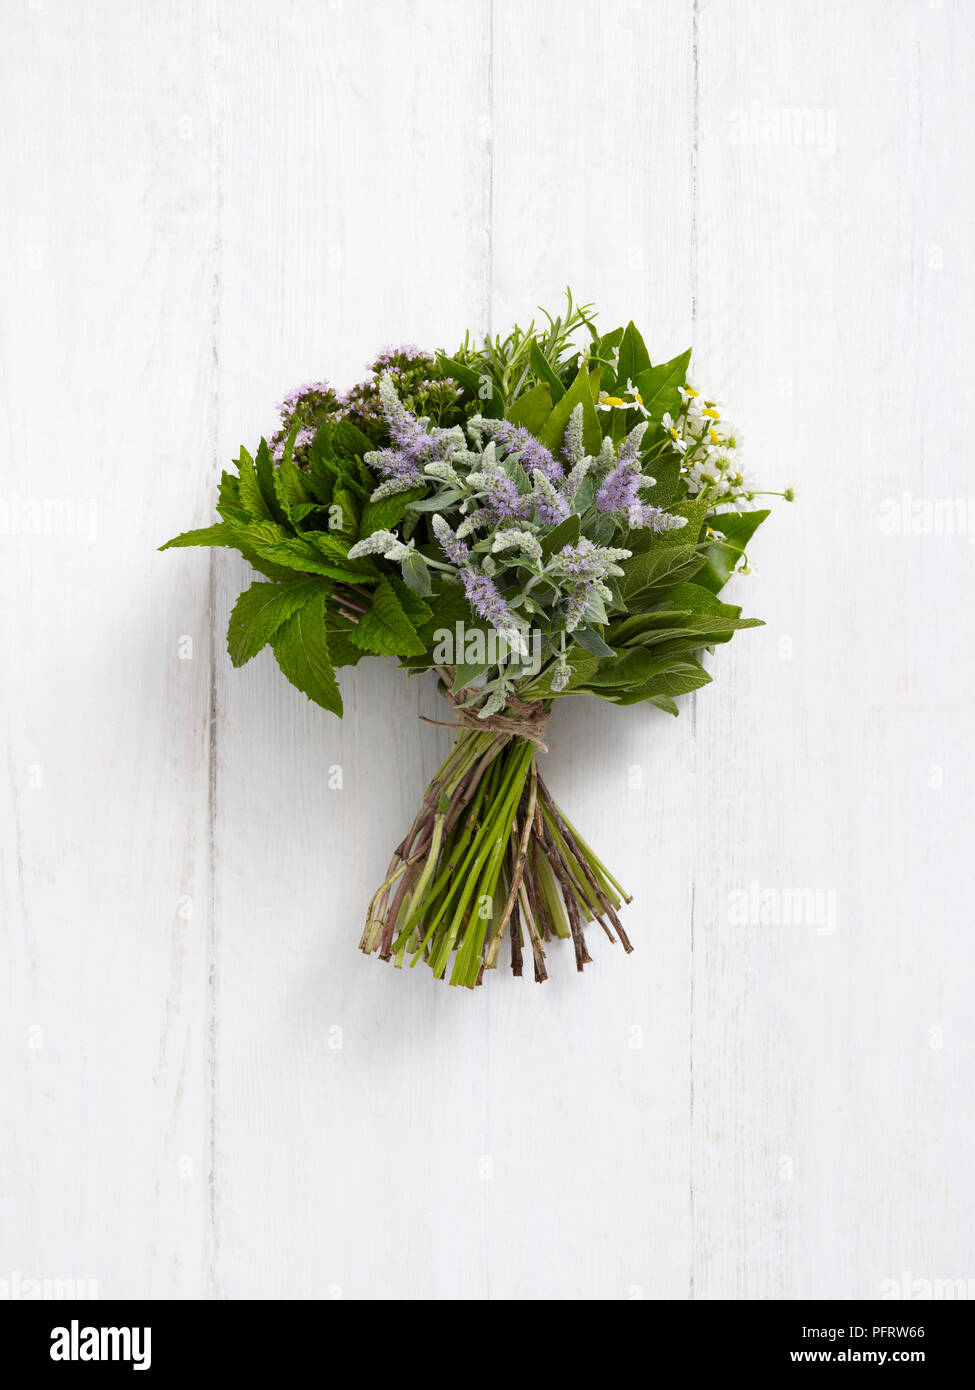 Herb posy (Herb nosegay), menta, fioritura menta, salvia, rosmarino, maggiorana, camomilla, foglie di alloro Foto Stock